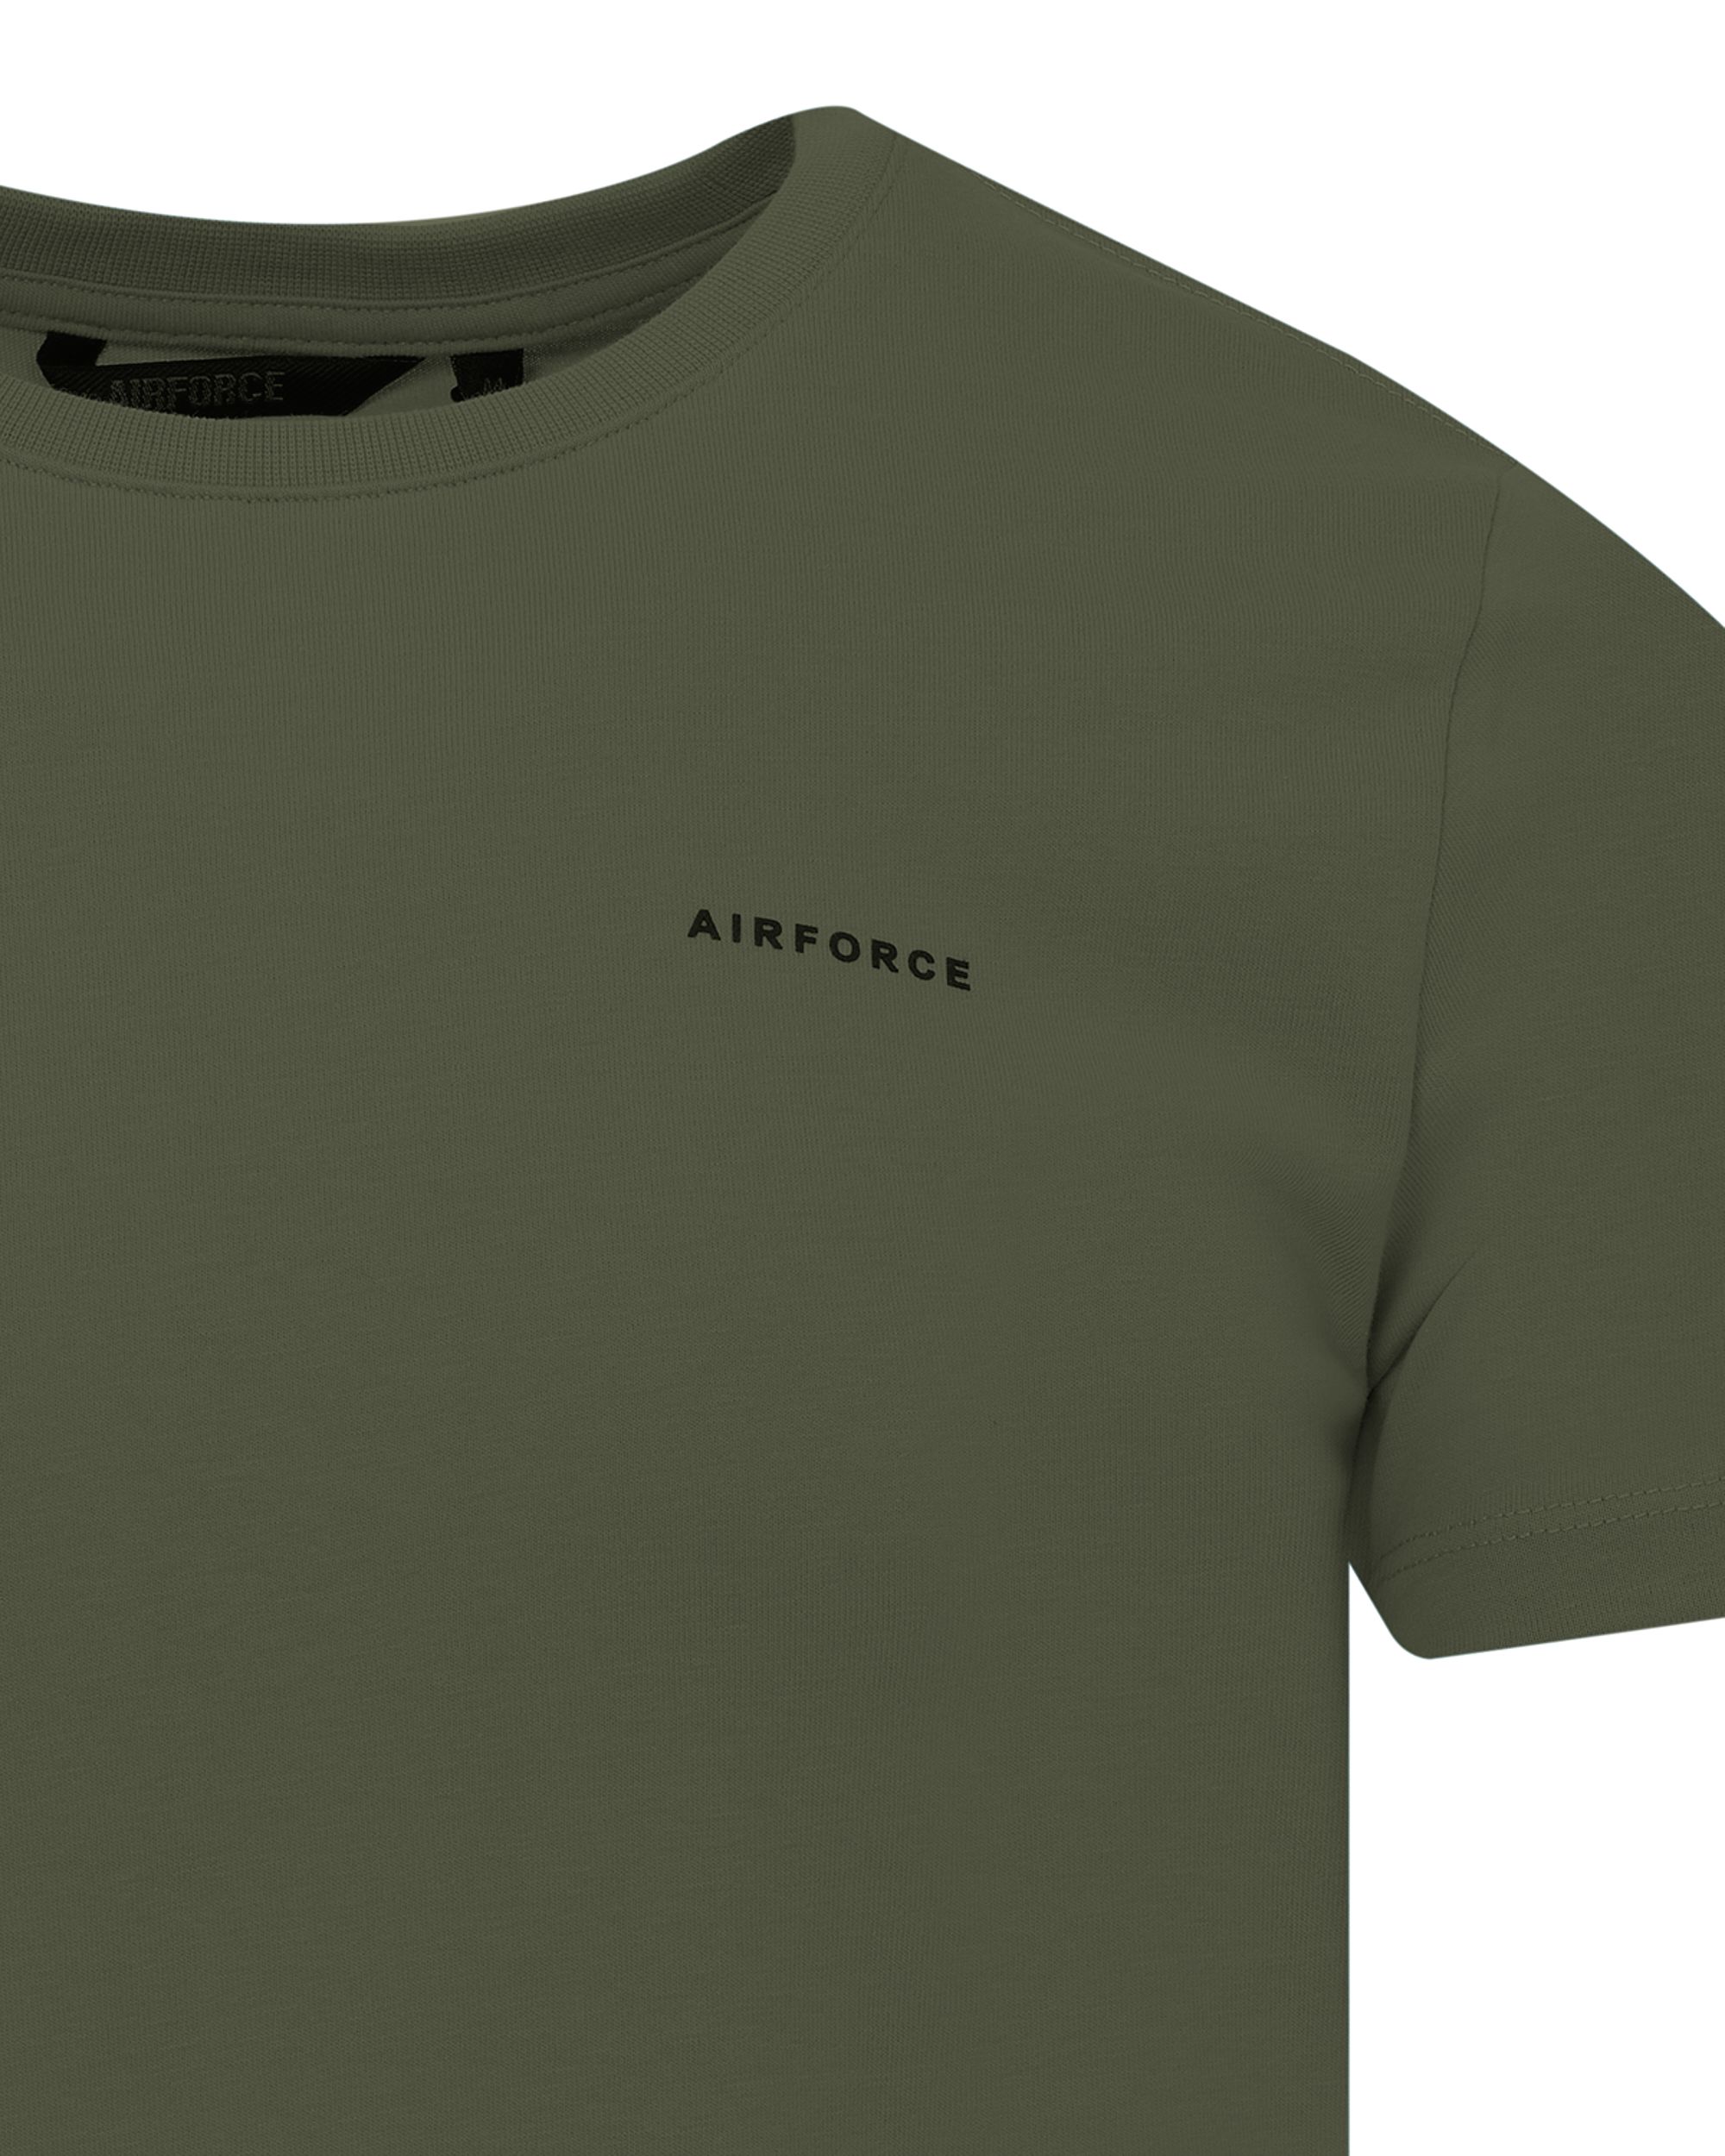 Airforce T-shirt KM Groen 083288-001-L